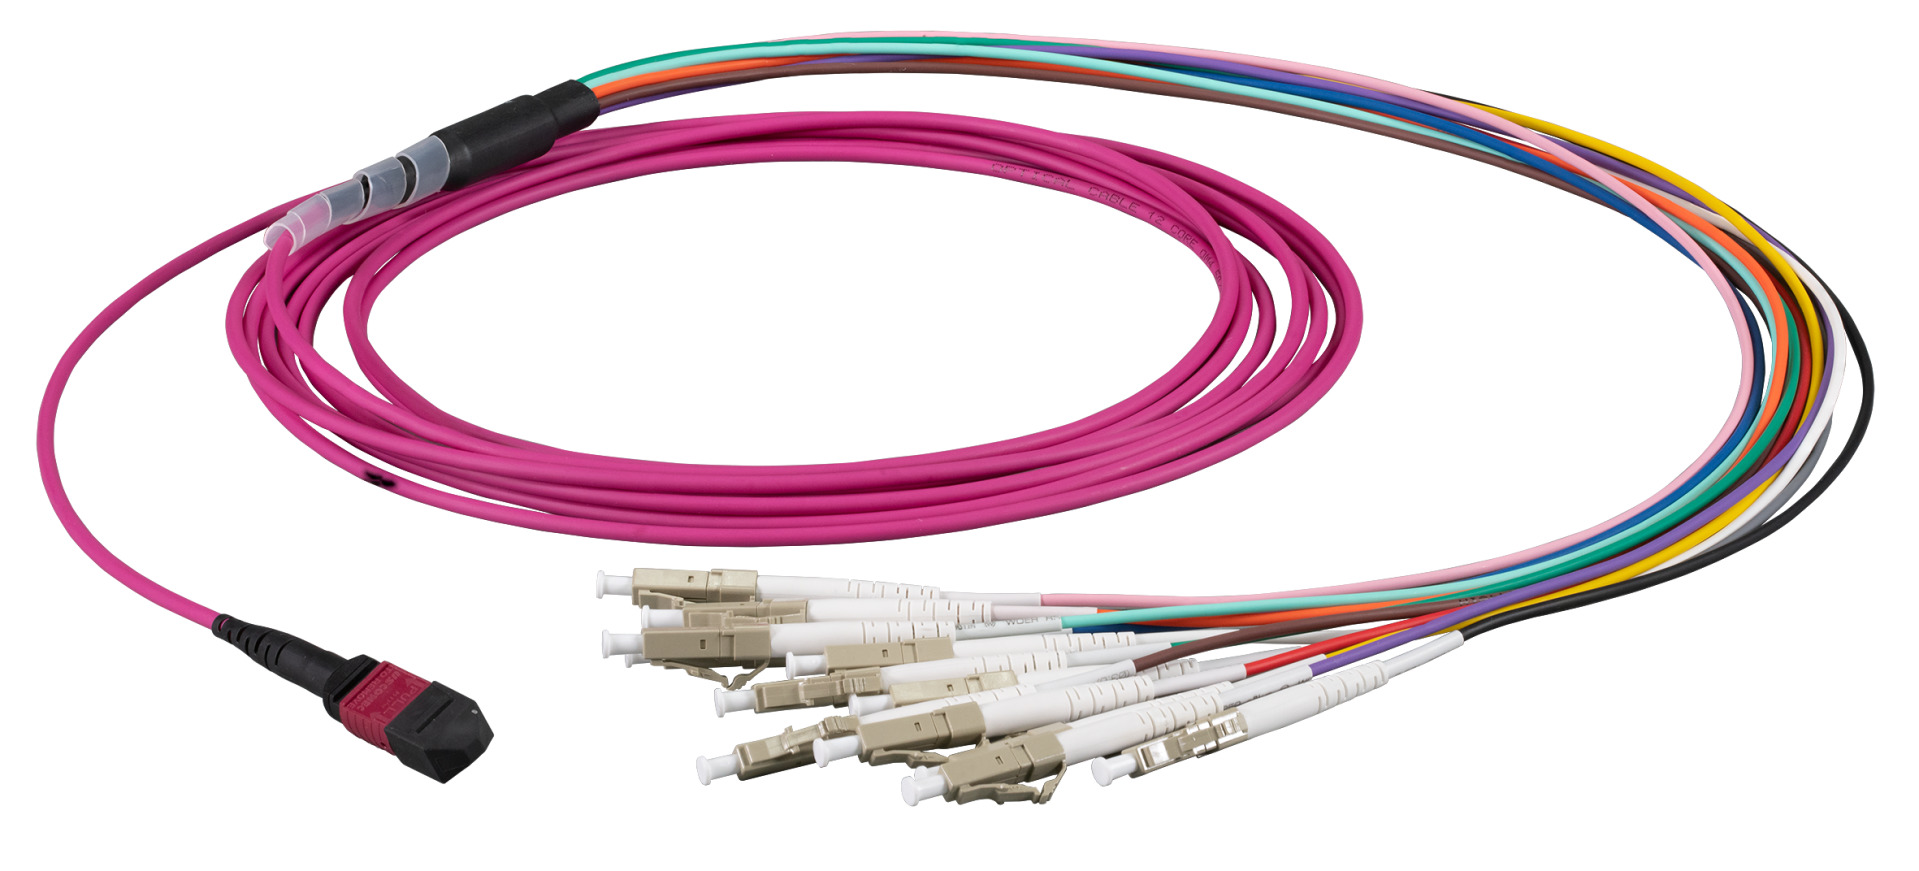 MTP®-F/LC 12-fiber patch cable OM4, LSZH erica-violet, 5m